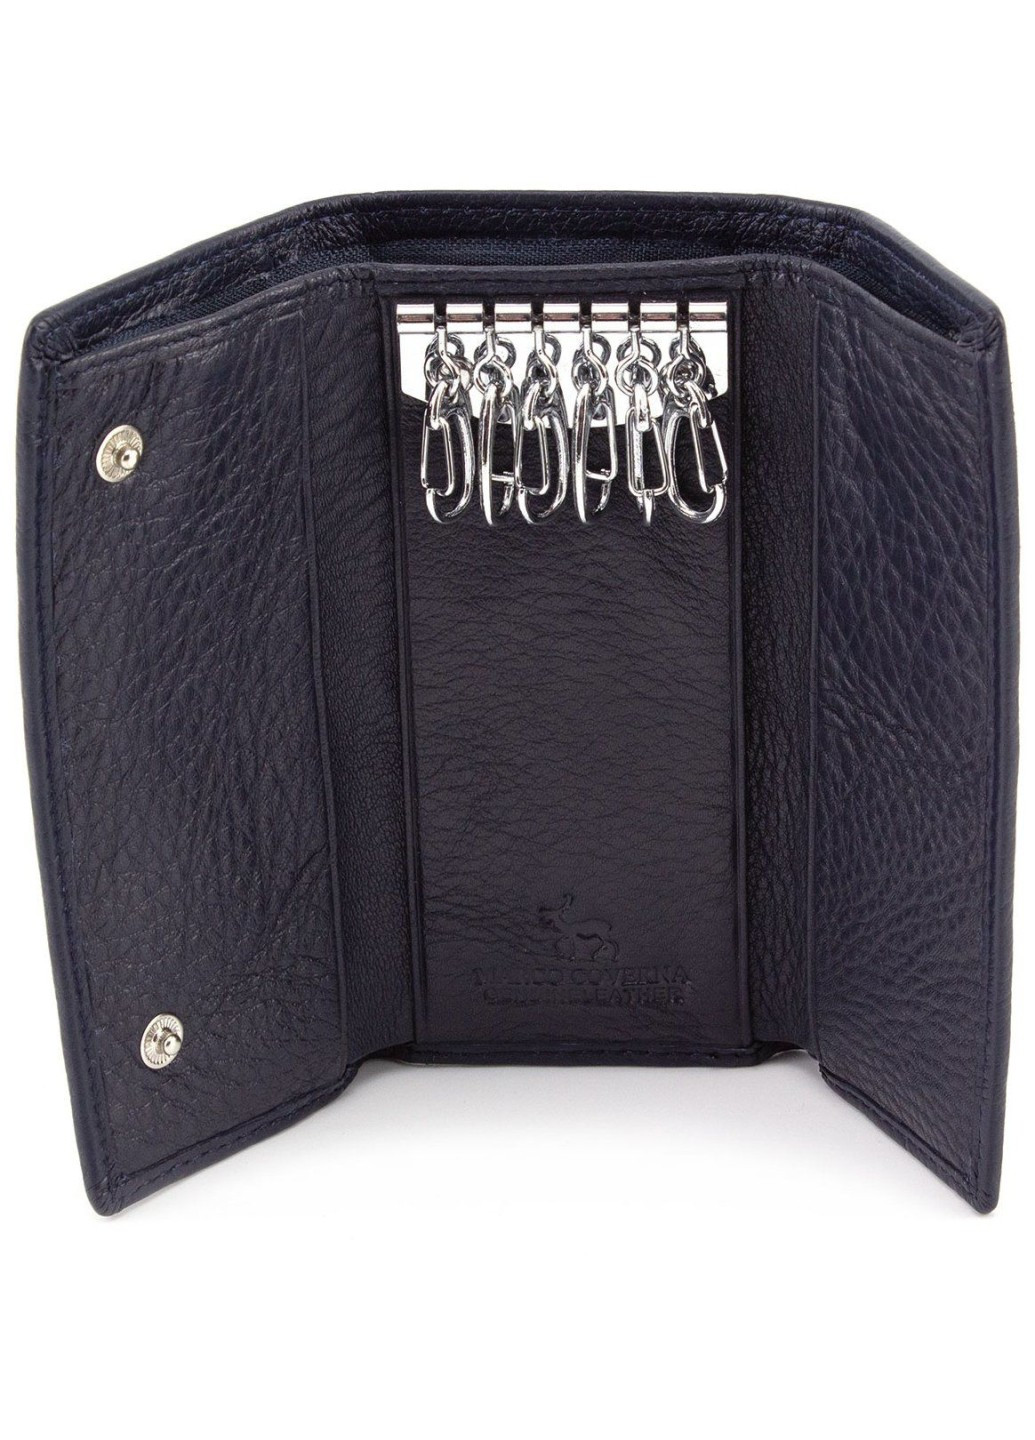 Кожаный кошелёк - ключница для девушек MC-5551-5 (JZ6672) синий Marco Coverna (259752465)